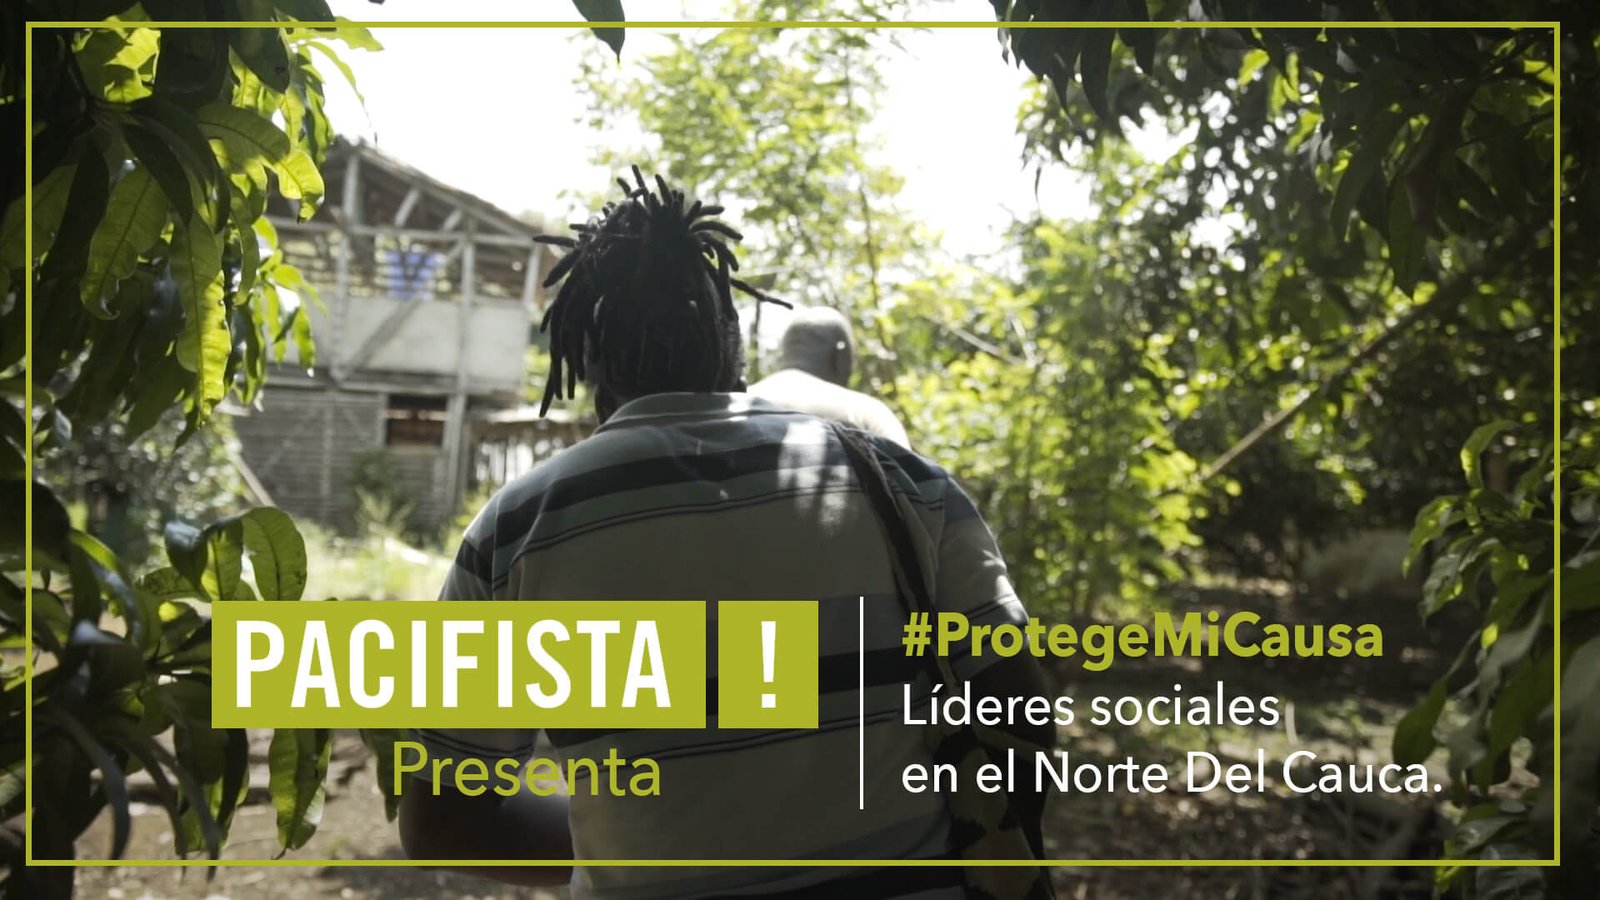 ¡Pacifista! presenta: #ProtegeMiCausa Líderes sociales en Cauca